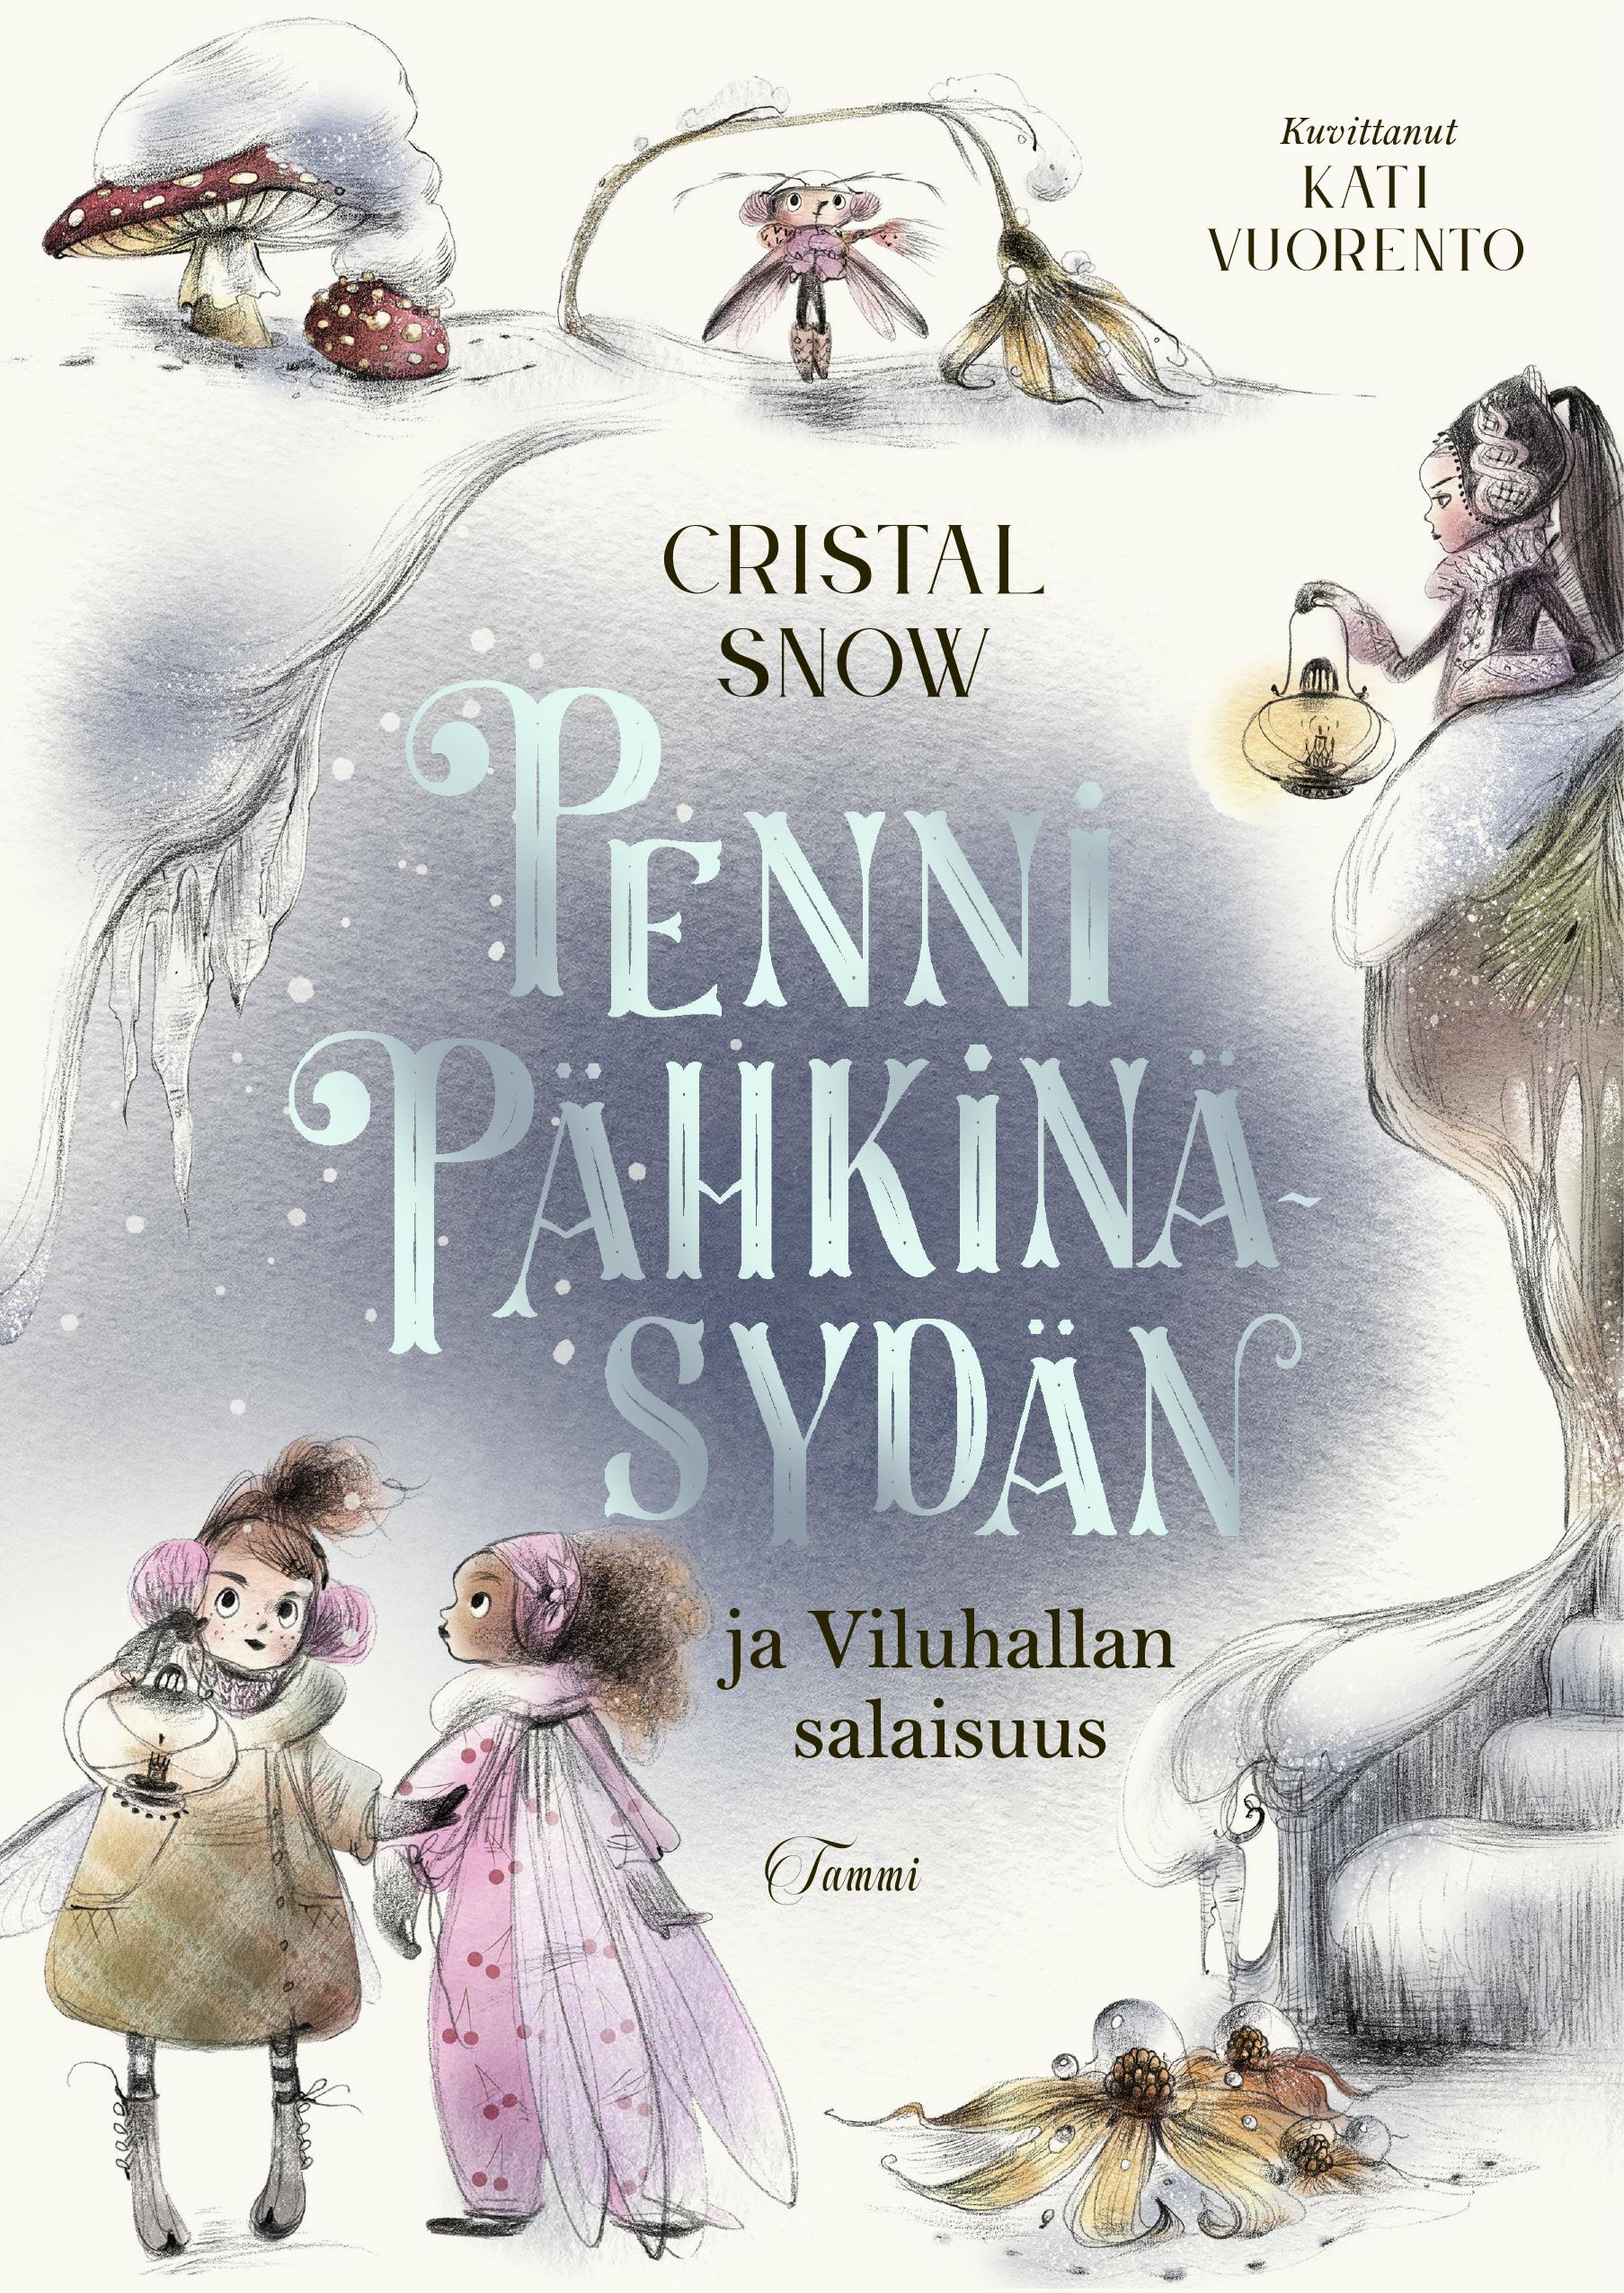 Cristal Snow, Kati Vuorento: Penni Pähkinäsydän ja Viluhallan salaisuus (Hardcover, Tammi)